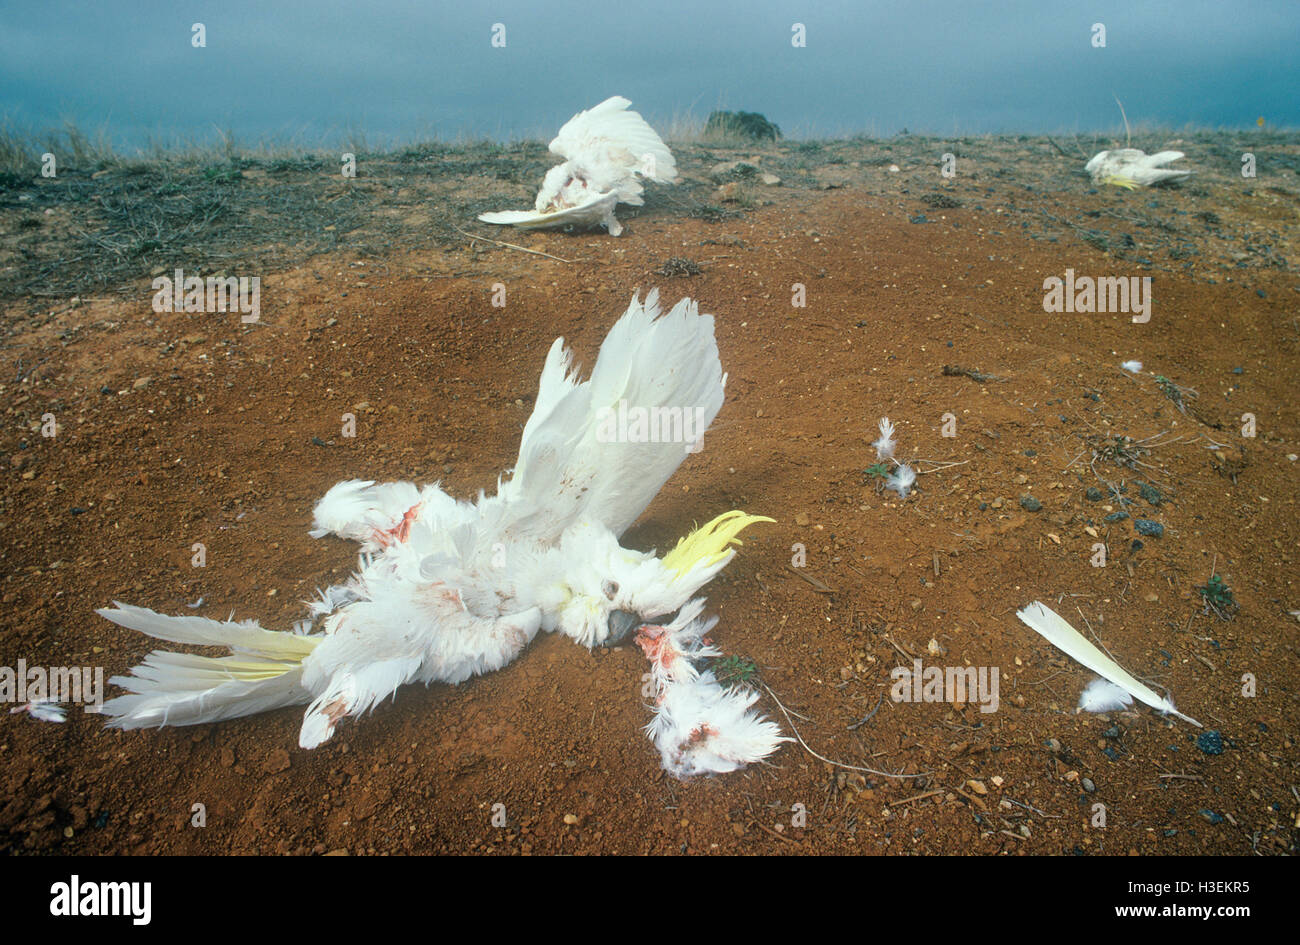 Azufre-cresta cacatúas blancas (Cacatua galerita), pájaros muertos envenenados por los agricultores y comidos por los gatos salvajes en Australia. Foto de stock